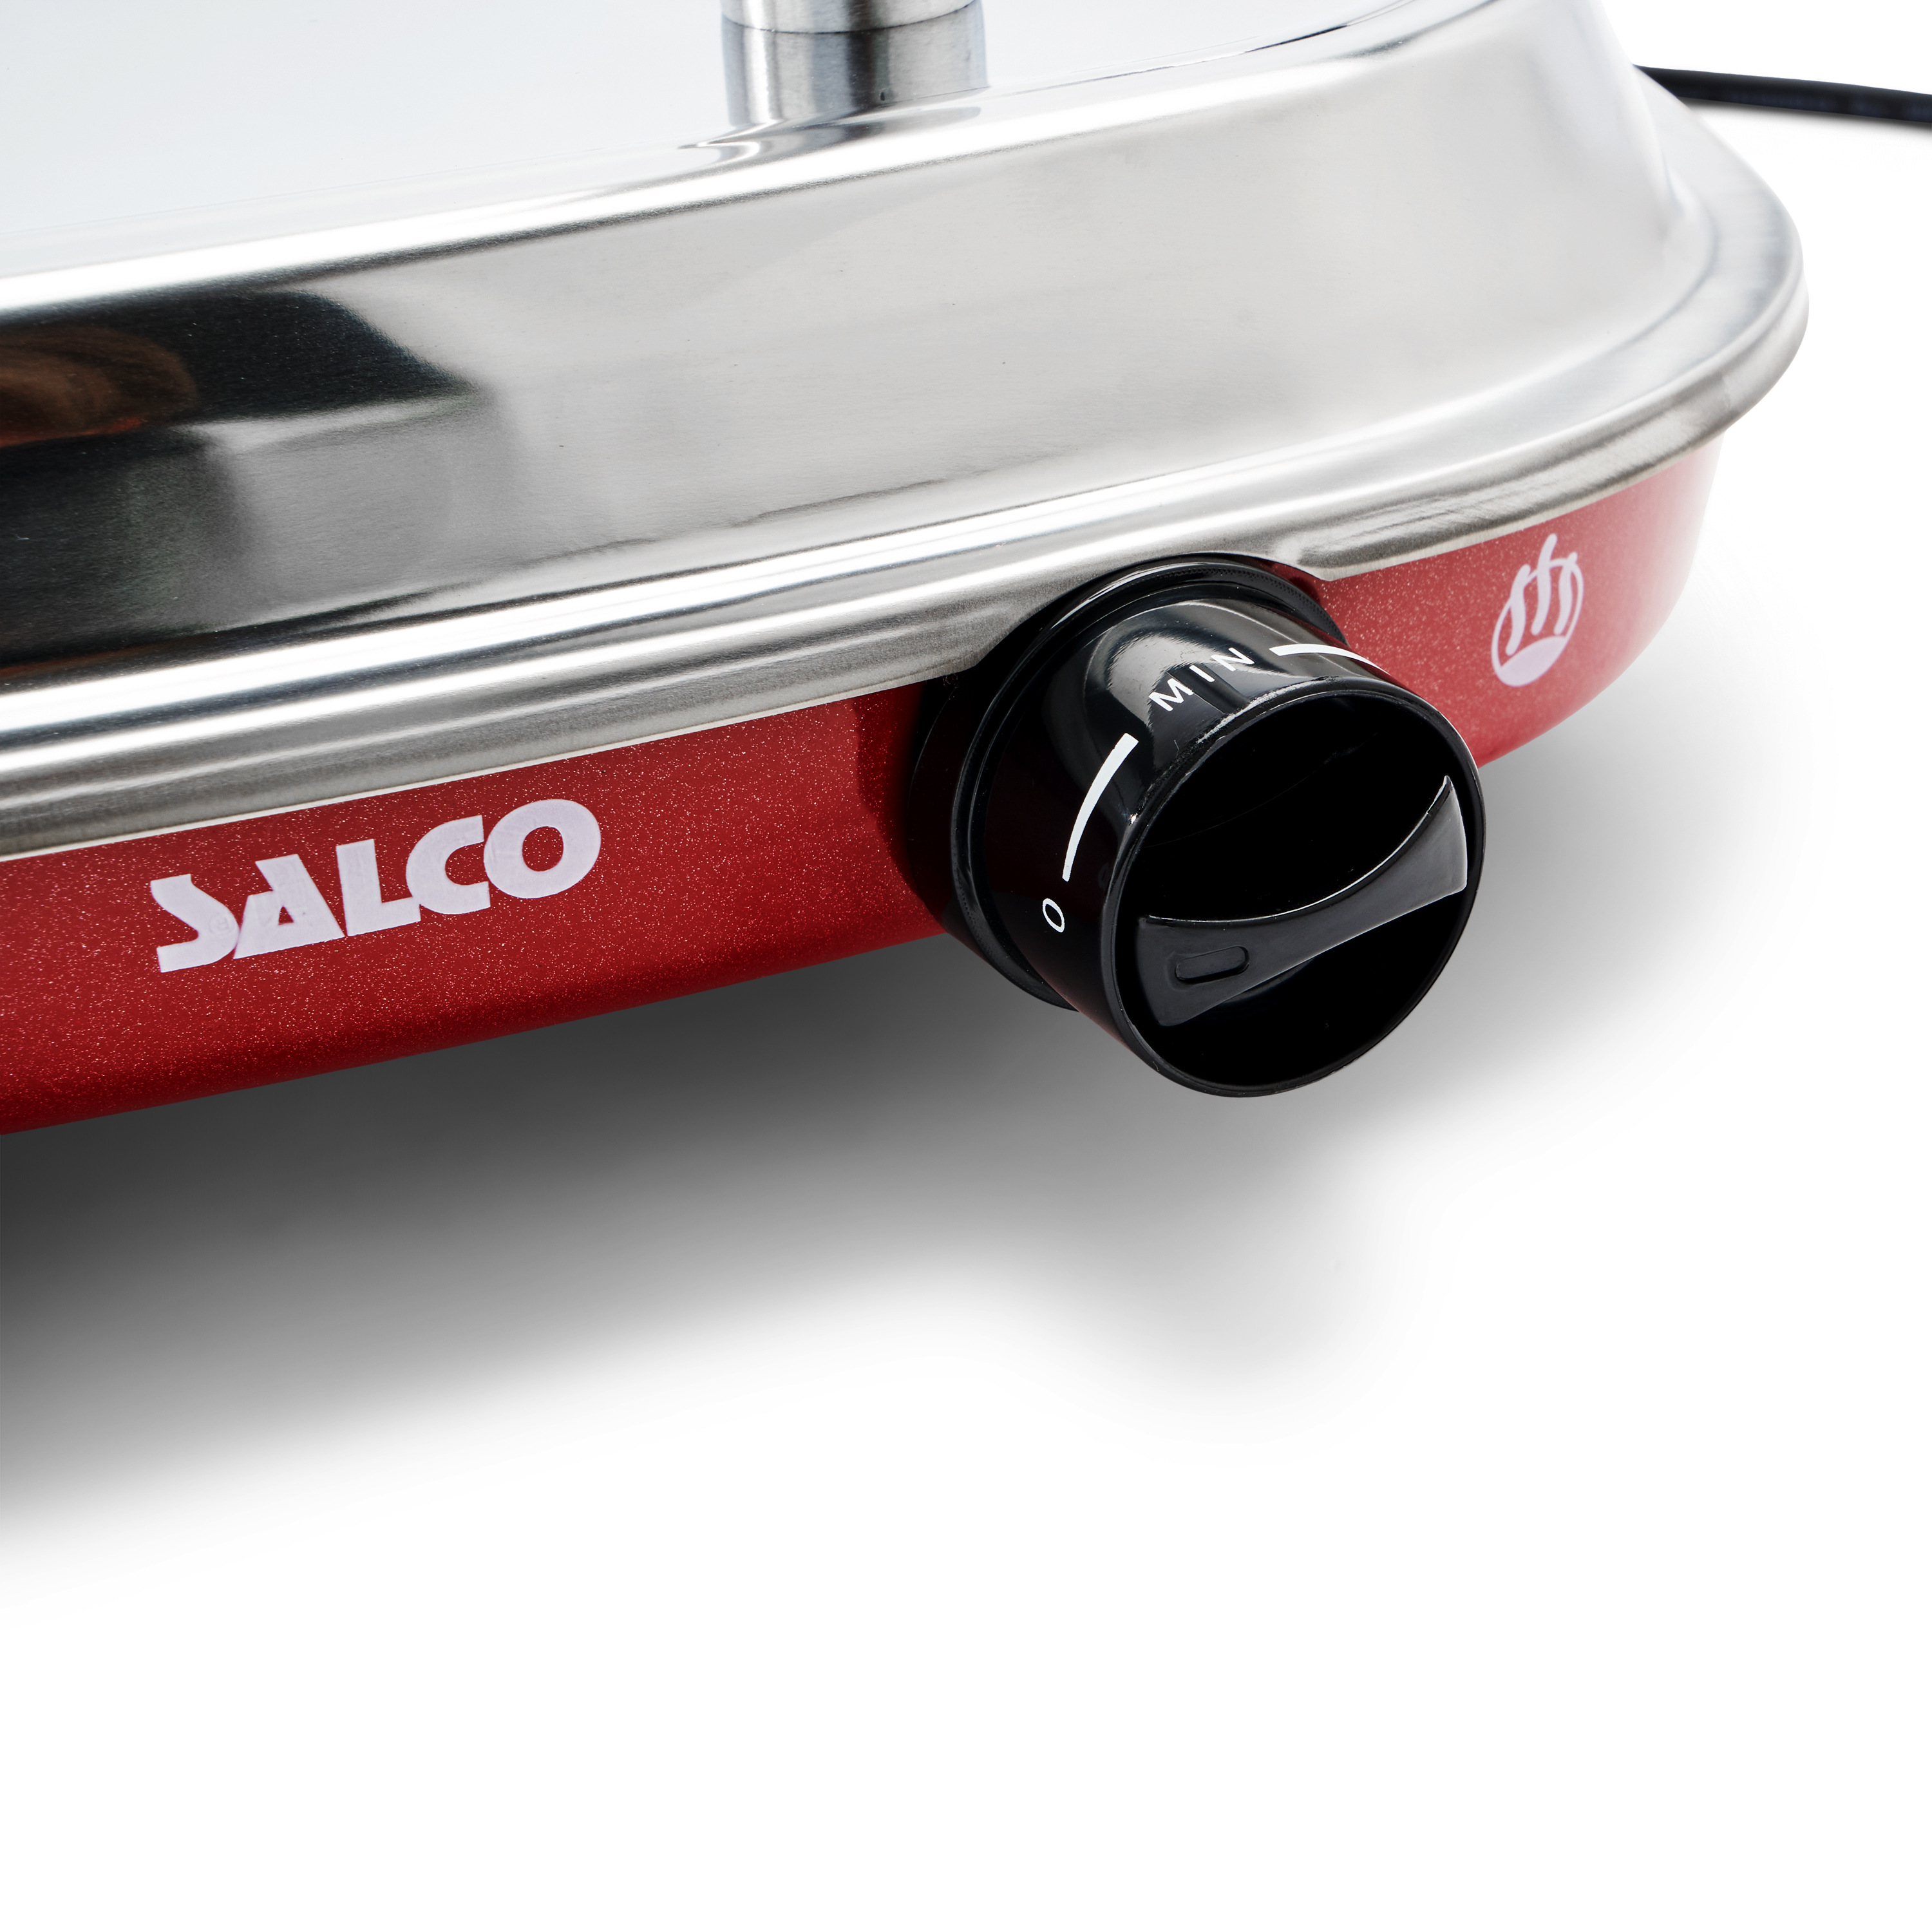 SALCO Salco HotDog Fast und Retro-Style Würstchen 450W Food Thermo-Control Brötchen Dampfgarer Maker für HotDog-Maker, rot)